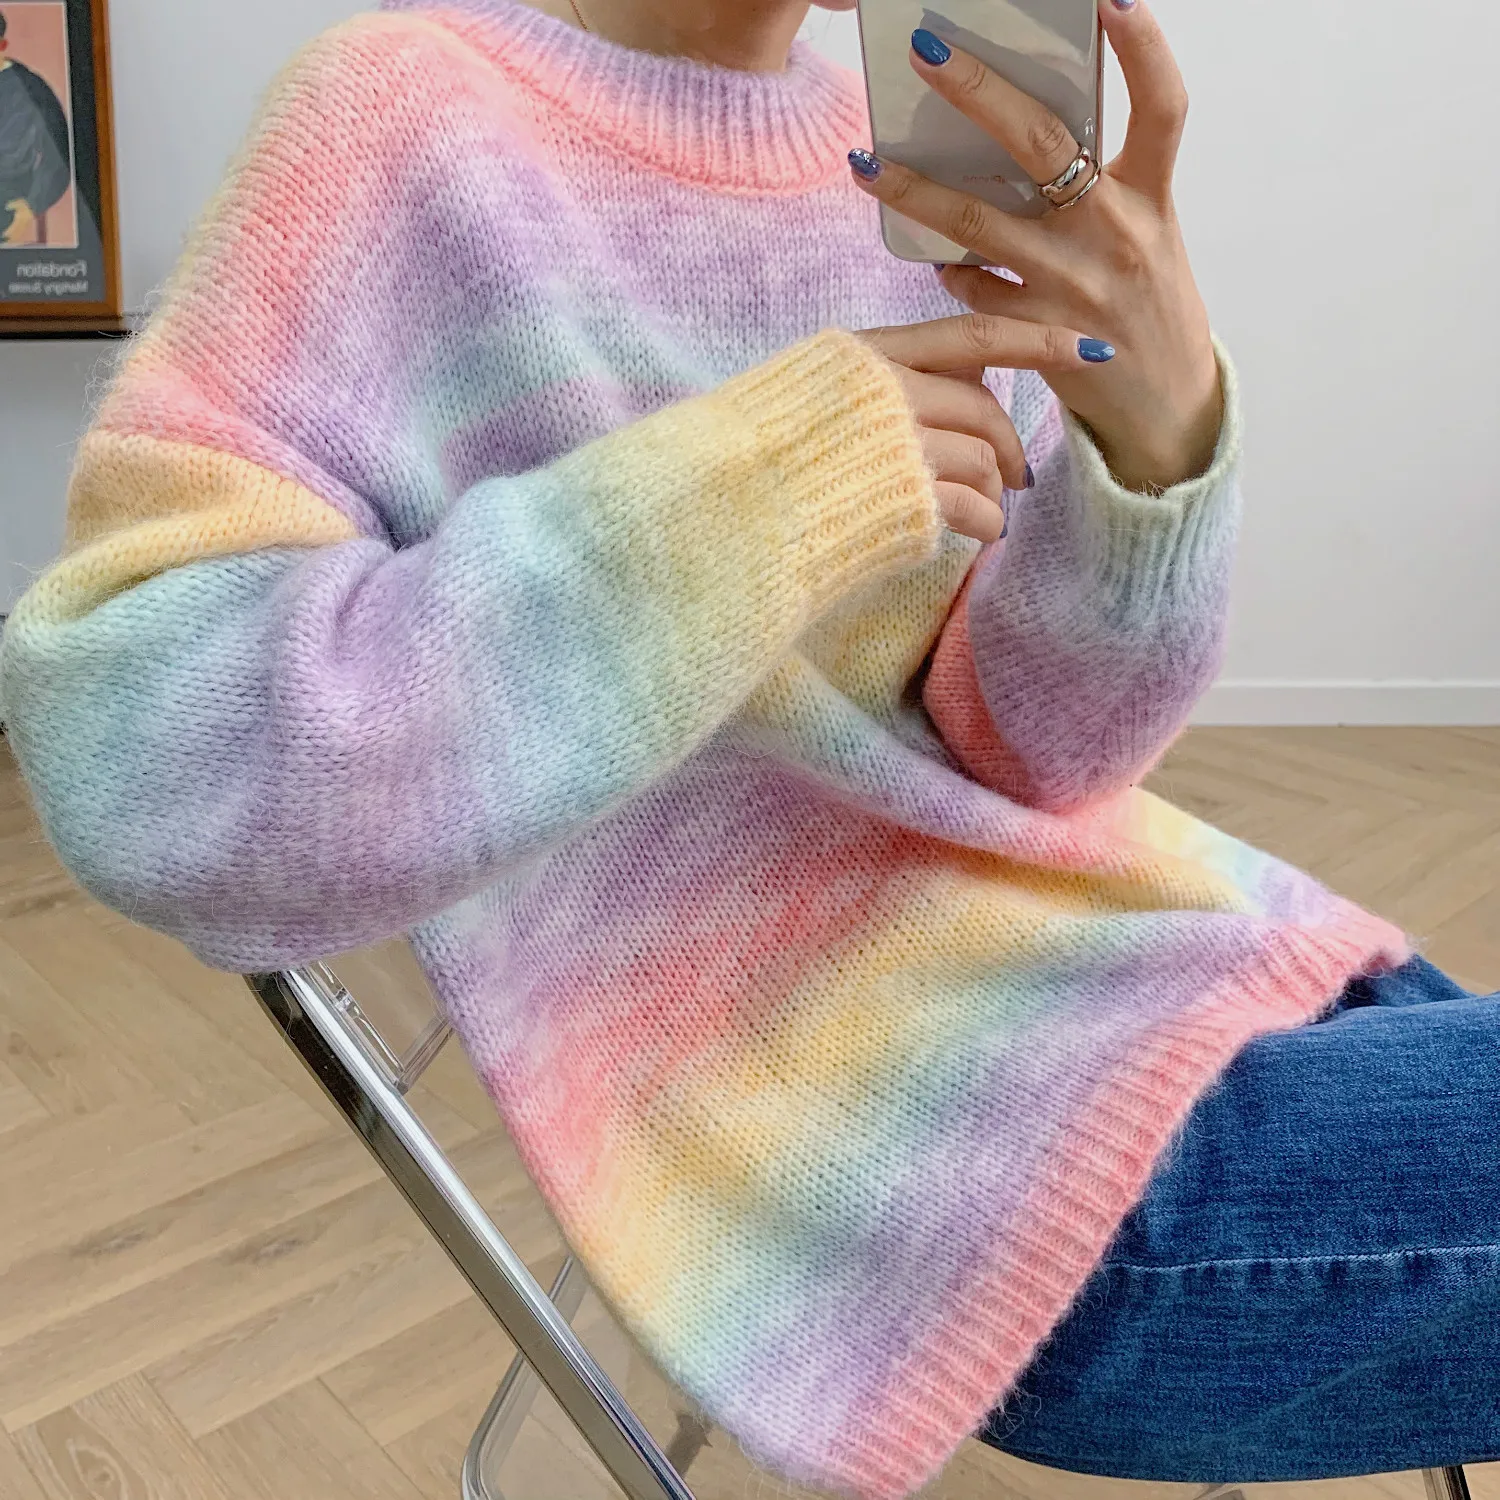 Otoño 2021 Nuevo de las Mujeres de Cuello Redondo de Punto de Jersey de Color Tie-dye de Impresión de la Moda de Gran Tamaño de Manga Larga Suéter 2